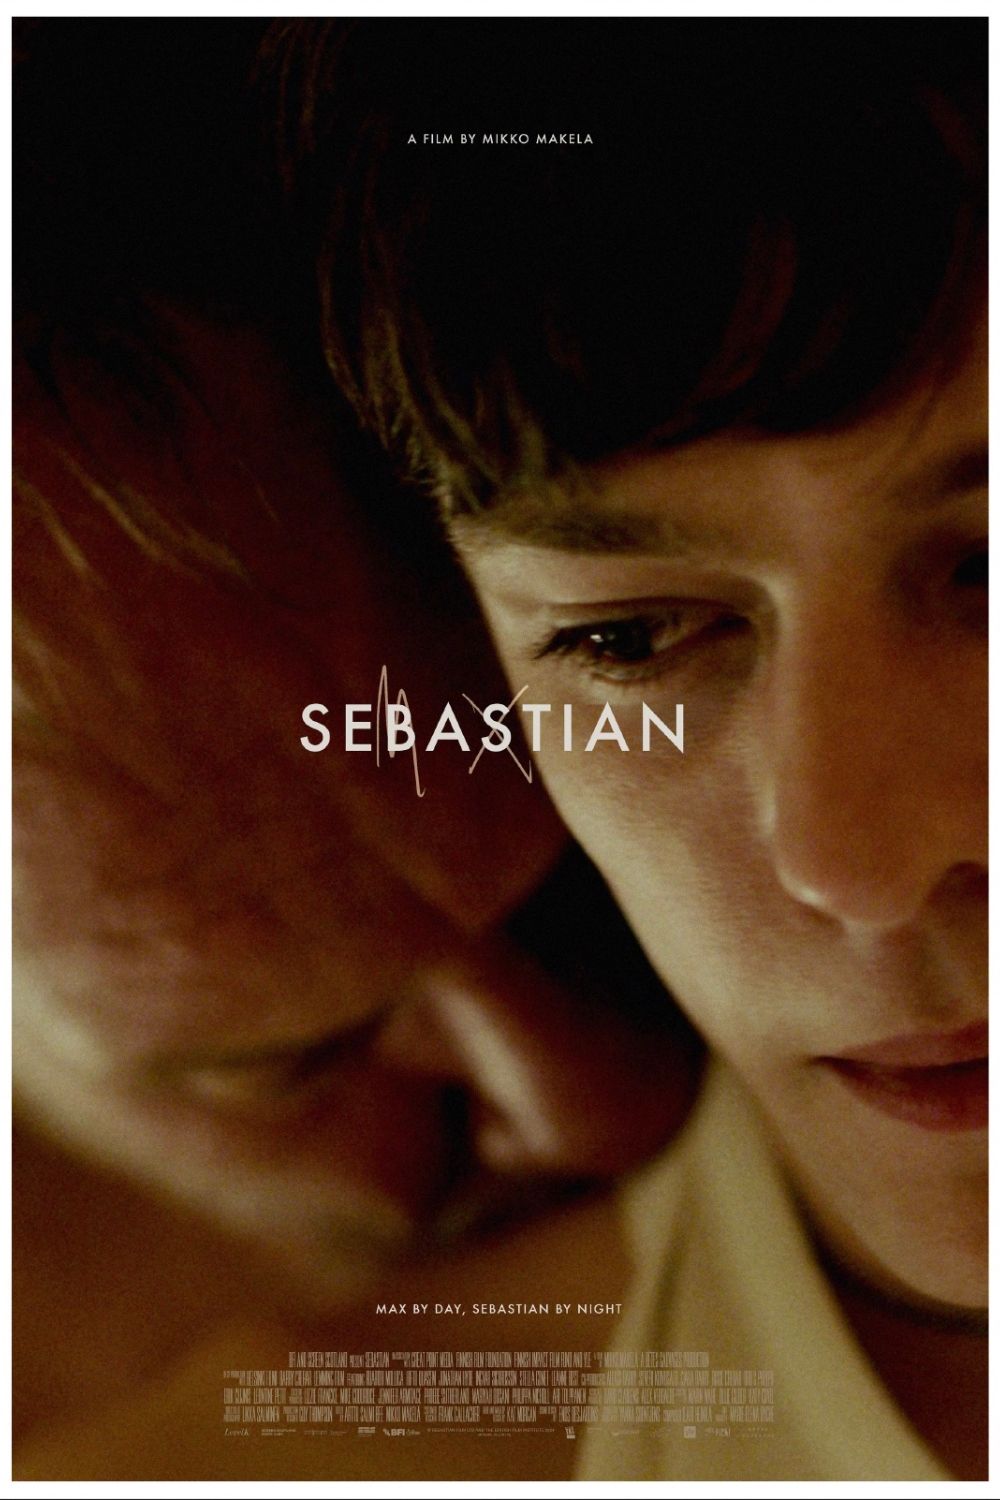 SEBASTIAN - Poster